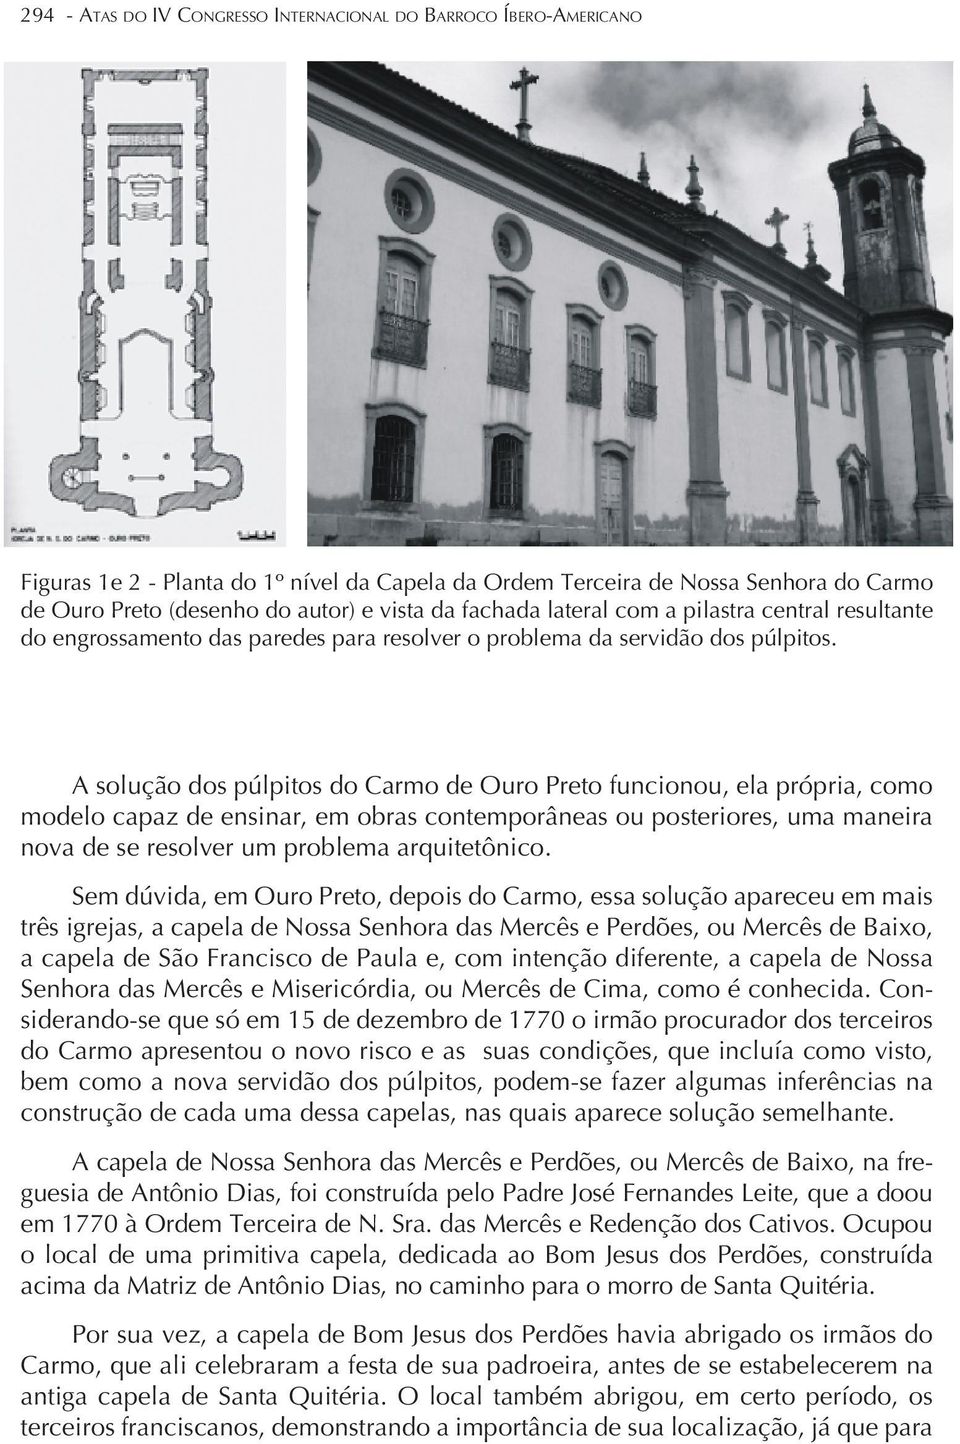 A solução dos púlpitos do Carmo de Ouro Preto funcionou, ela própria, como modelo capaz de ensinar, em obras contemporâneas ou posteriores, uma maneira nova de se resolver um problema arquitetônico.